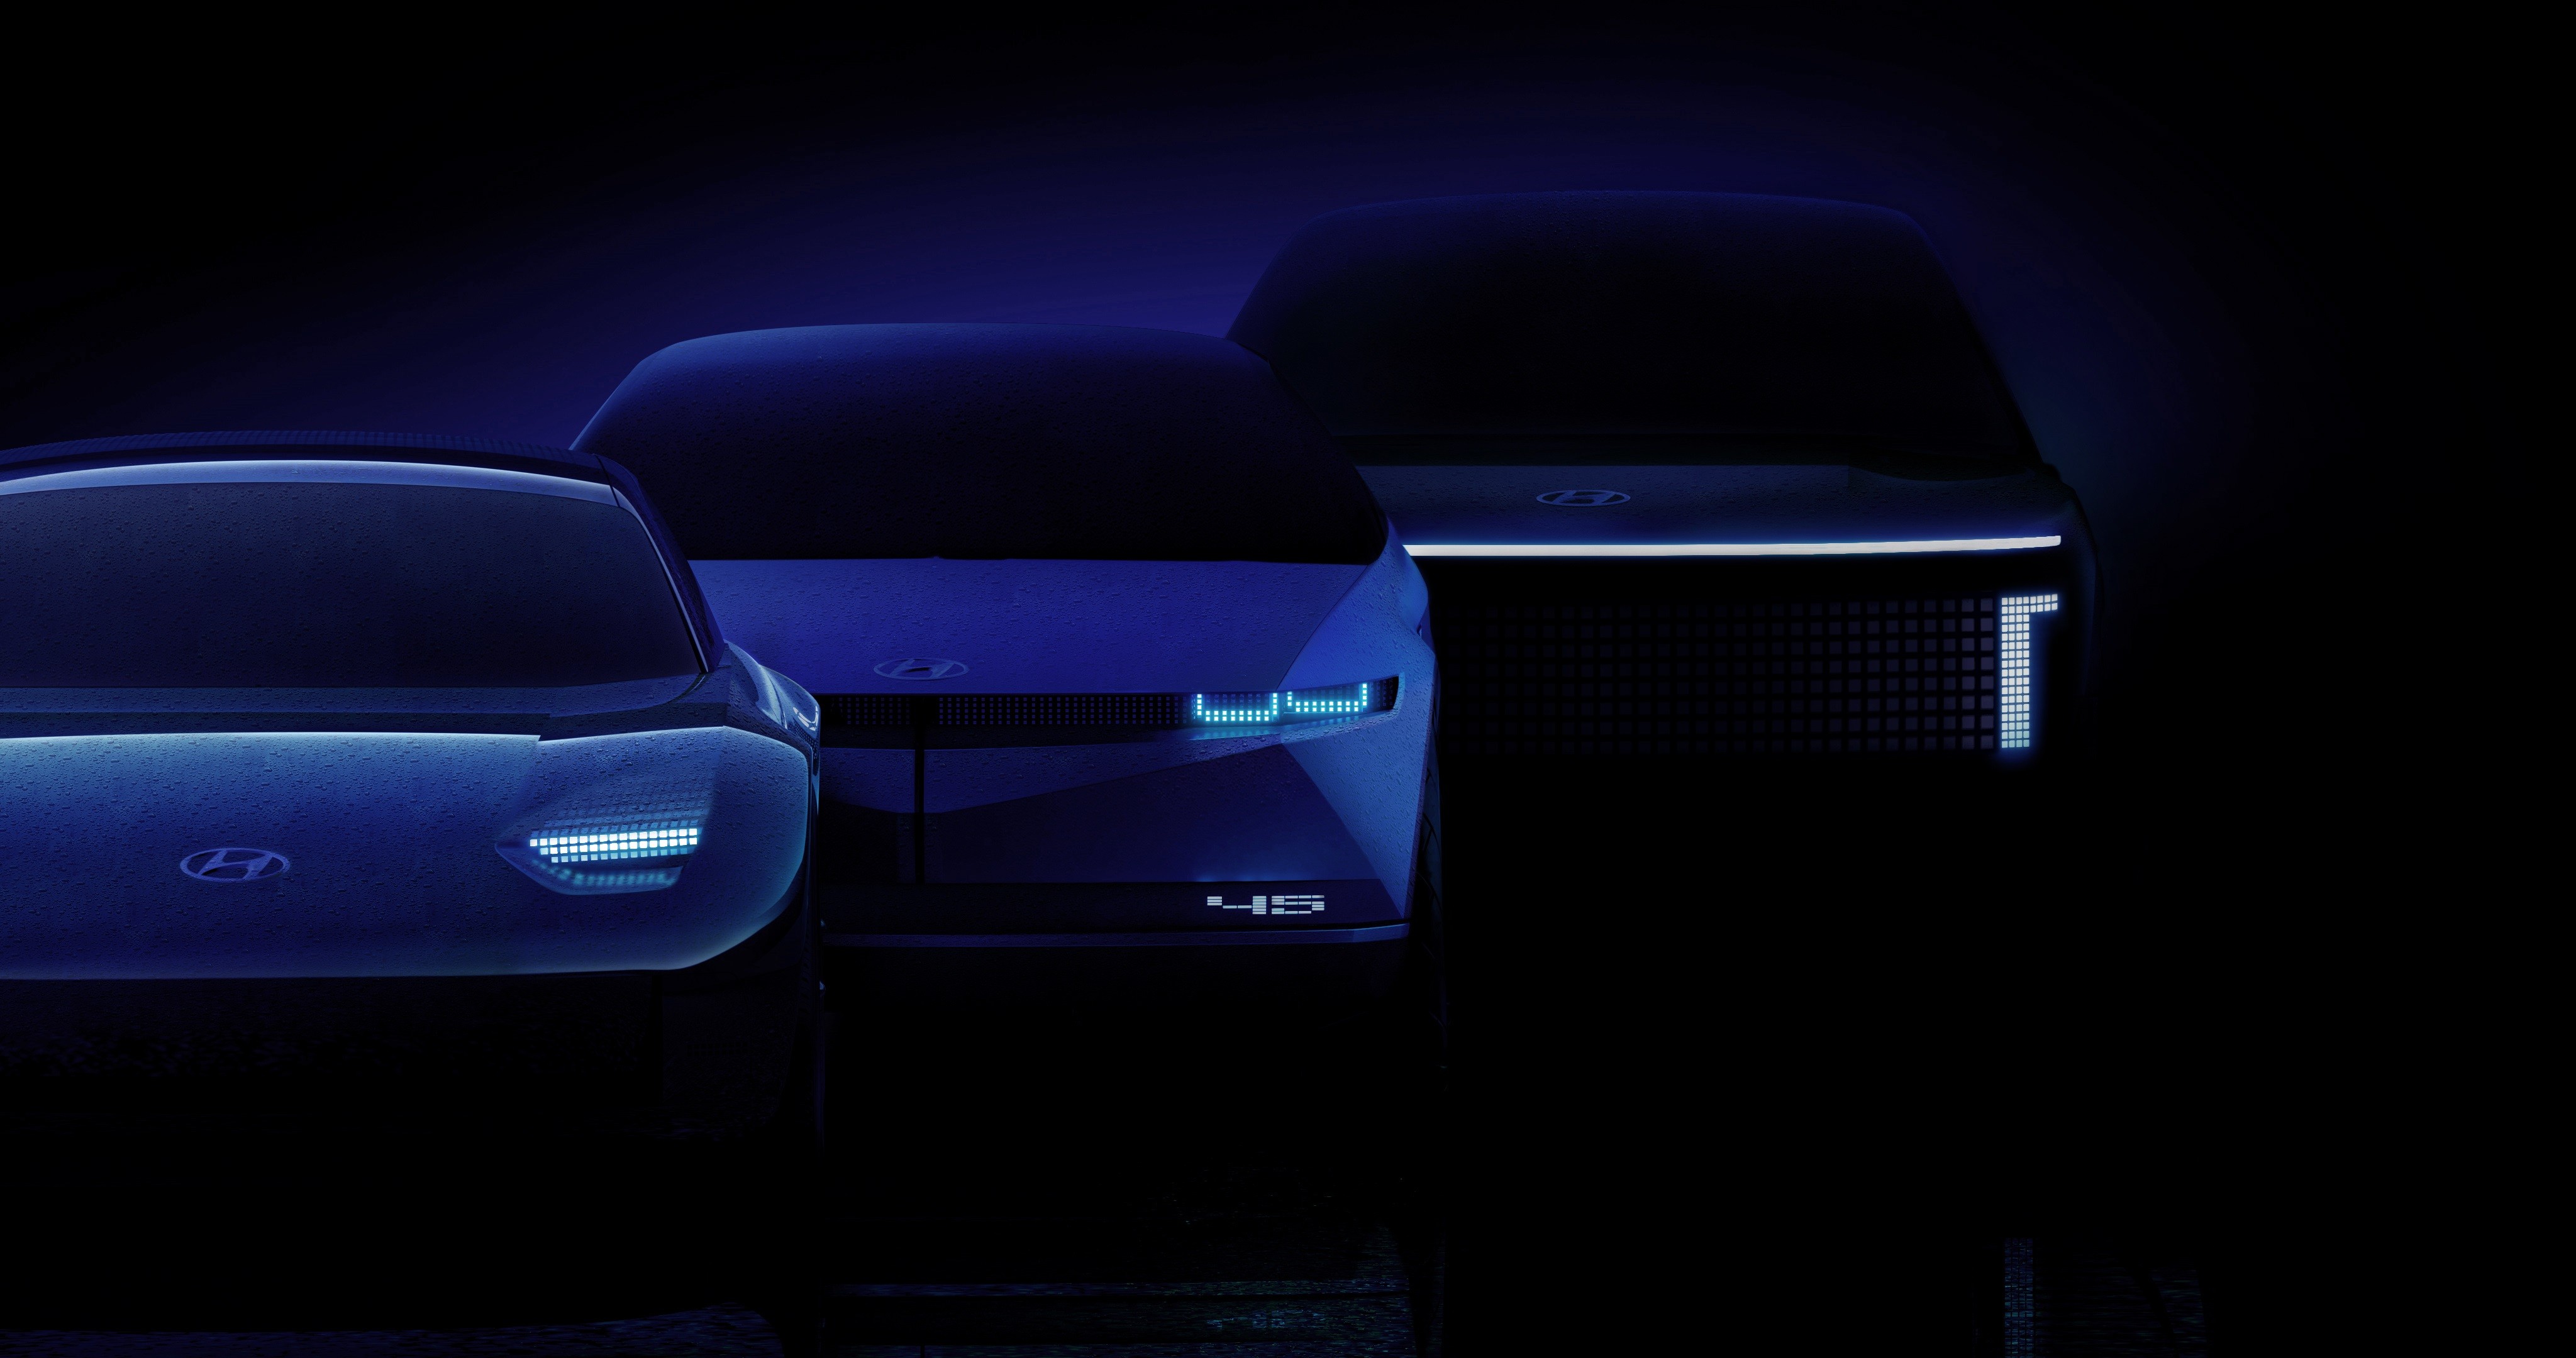 Η Hyundai Motor λανσάρει τη μάρκα IONIQ αποκλειστικά για EV οχήματα, ανοίγοντας ένα νέο κεφάλαιο για πελατοκεντρικές EV εμπειρίες